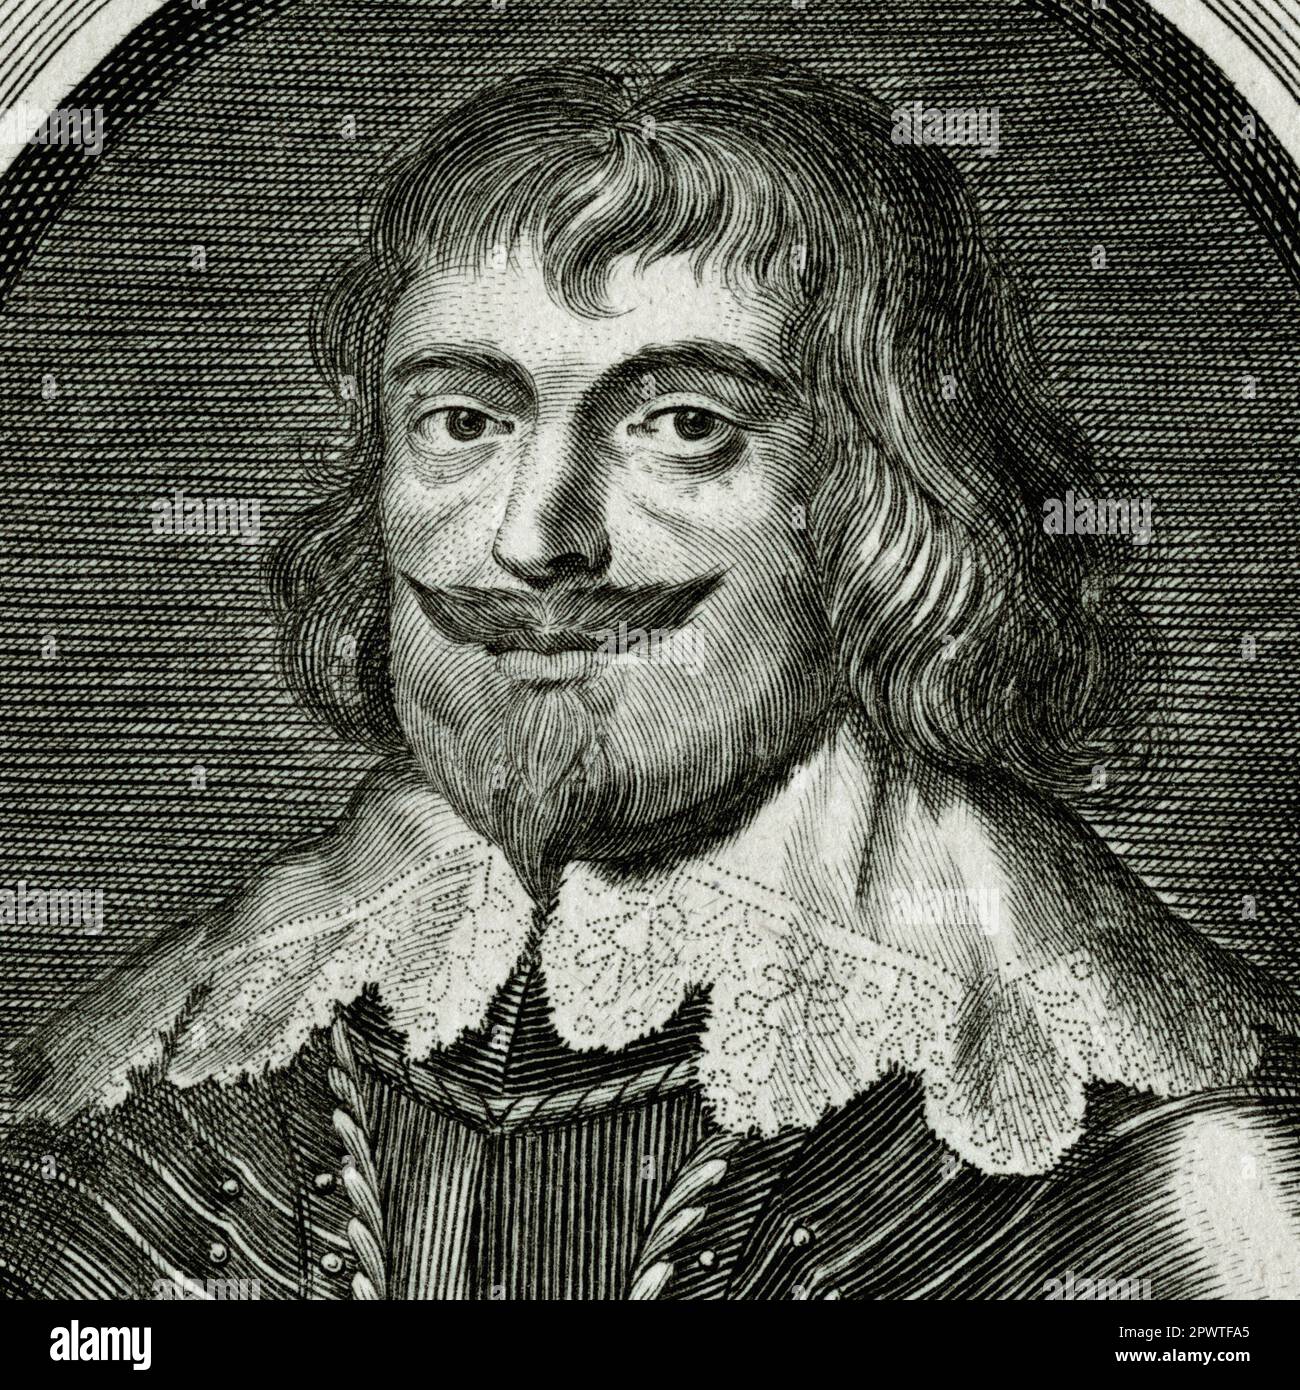 Robert Devereux (1591-1646), 3rd comte d'Essex et général parlementaire pendant la première Guerre civile anglaise. Détail carré de la gravure créée en 1700s par un graveur inconnu, à partir d'un portrait original de Sir Anthony van Dyck (1599 - 1641). Banque D'Images